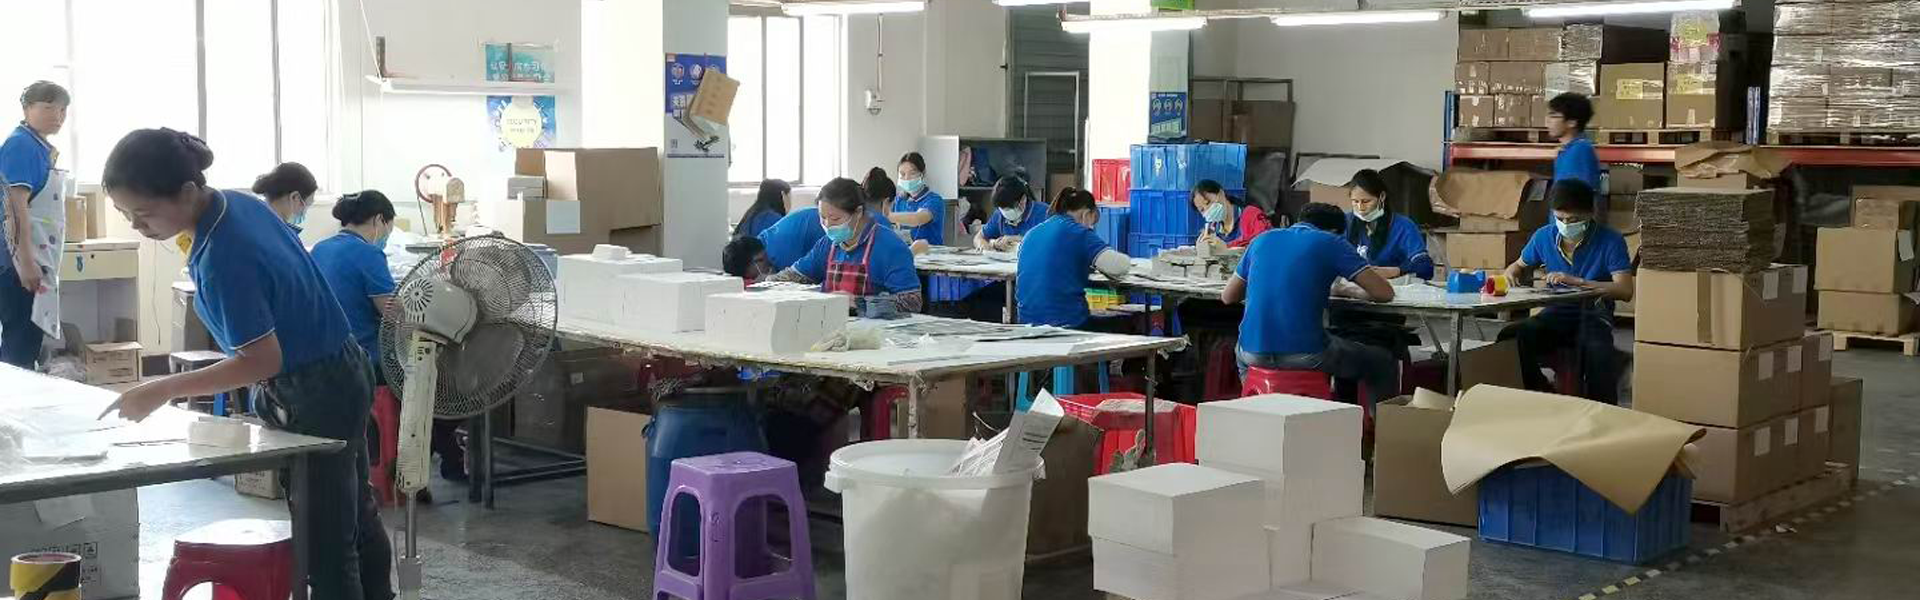 Guangzhou Andrsan Printing Technology Co.,Ltd